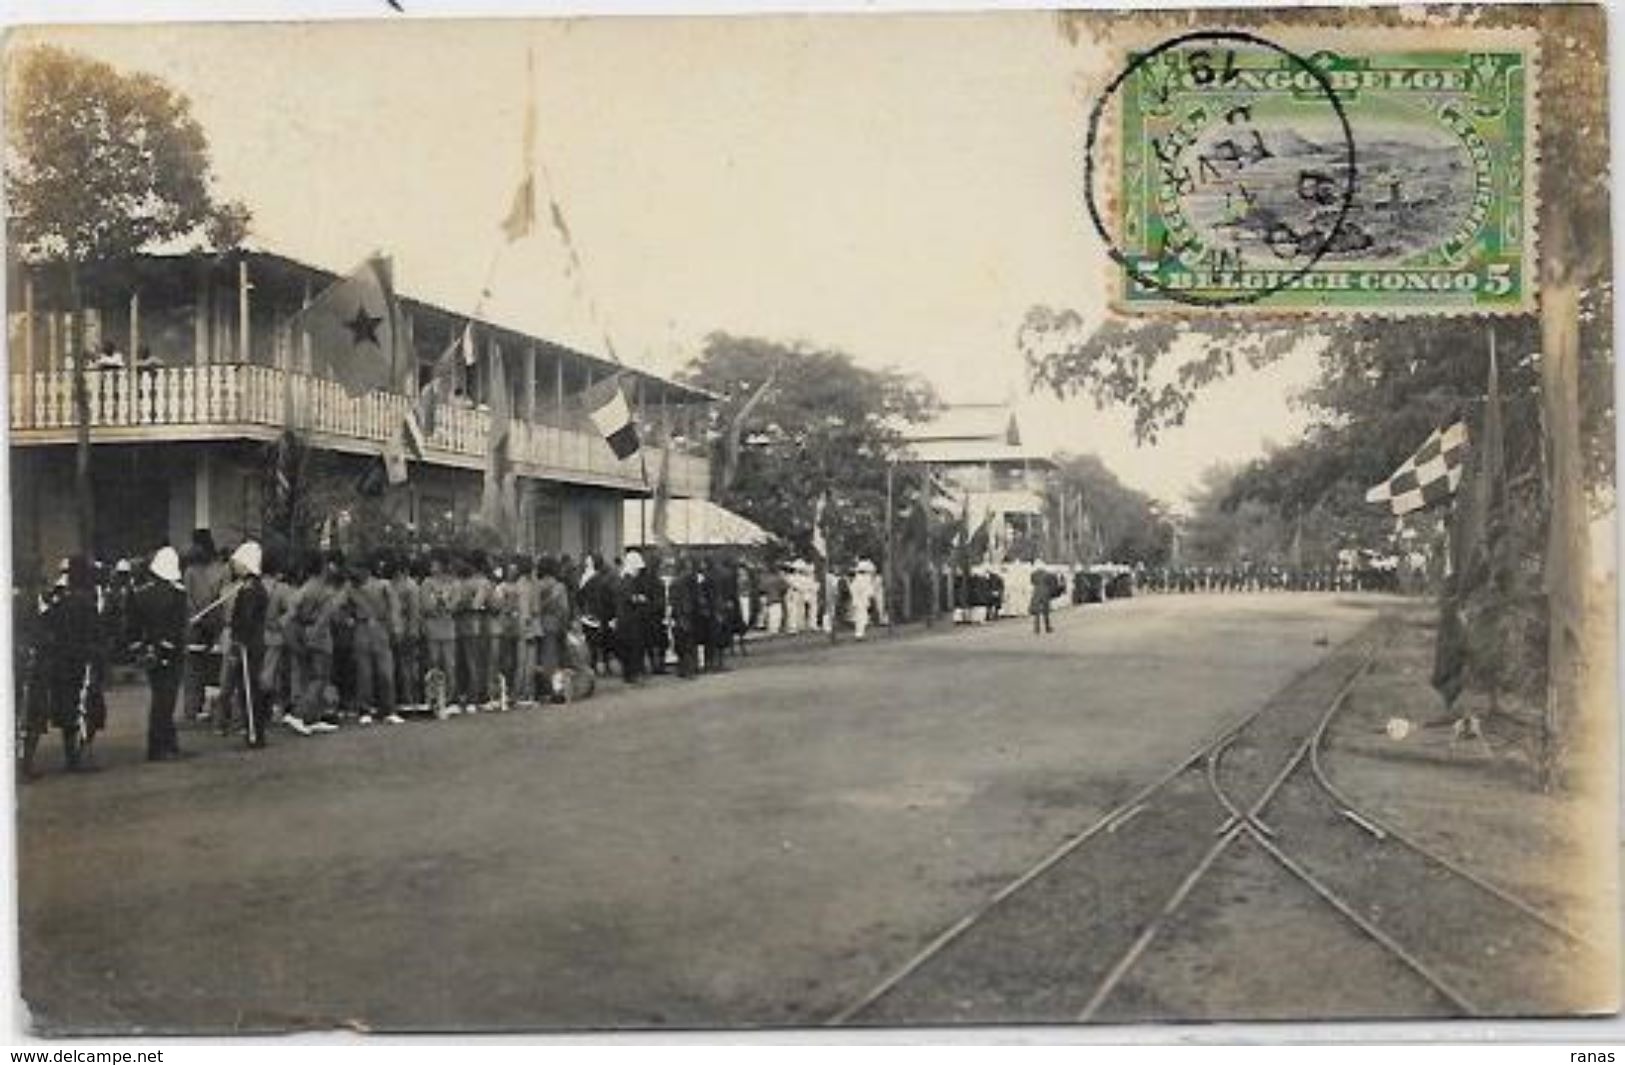 CPA Congo Belge Afrique Noire Visite Du Prince Albert Carte Photo  Circulé 1911 - Congo Belga